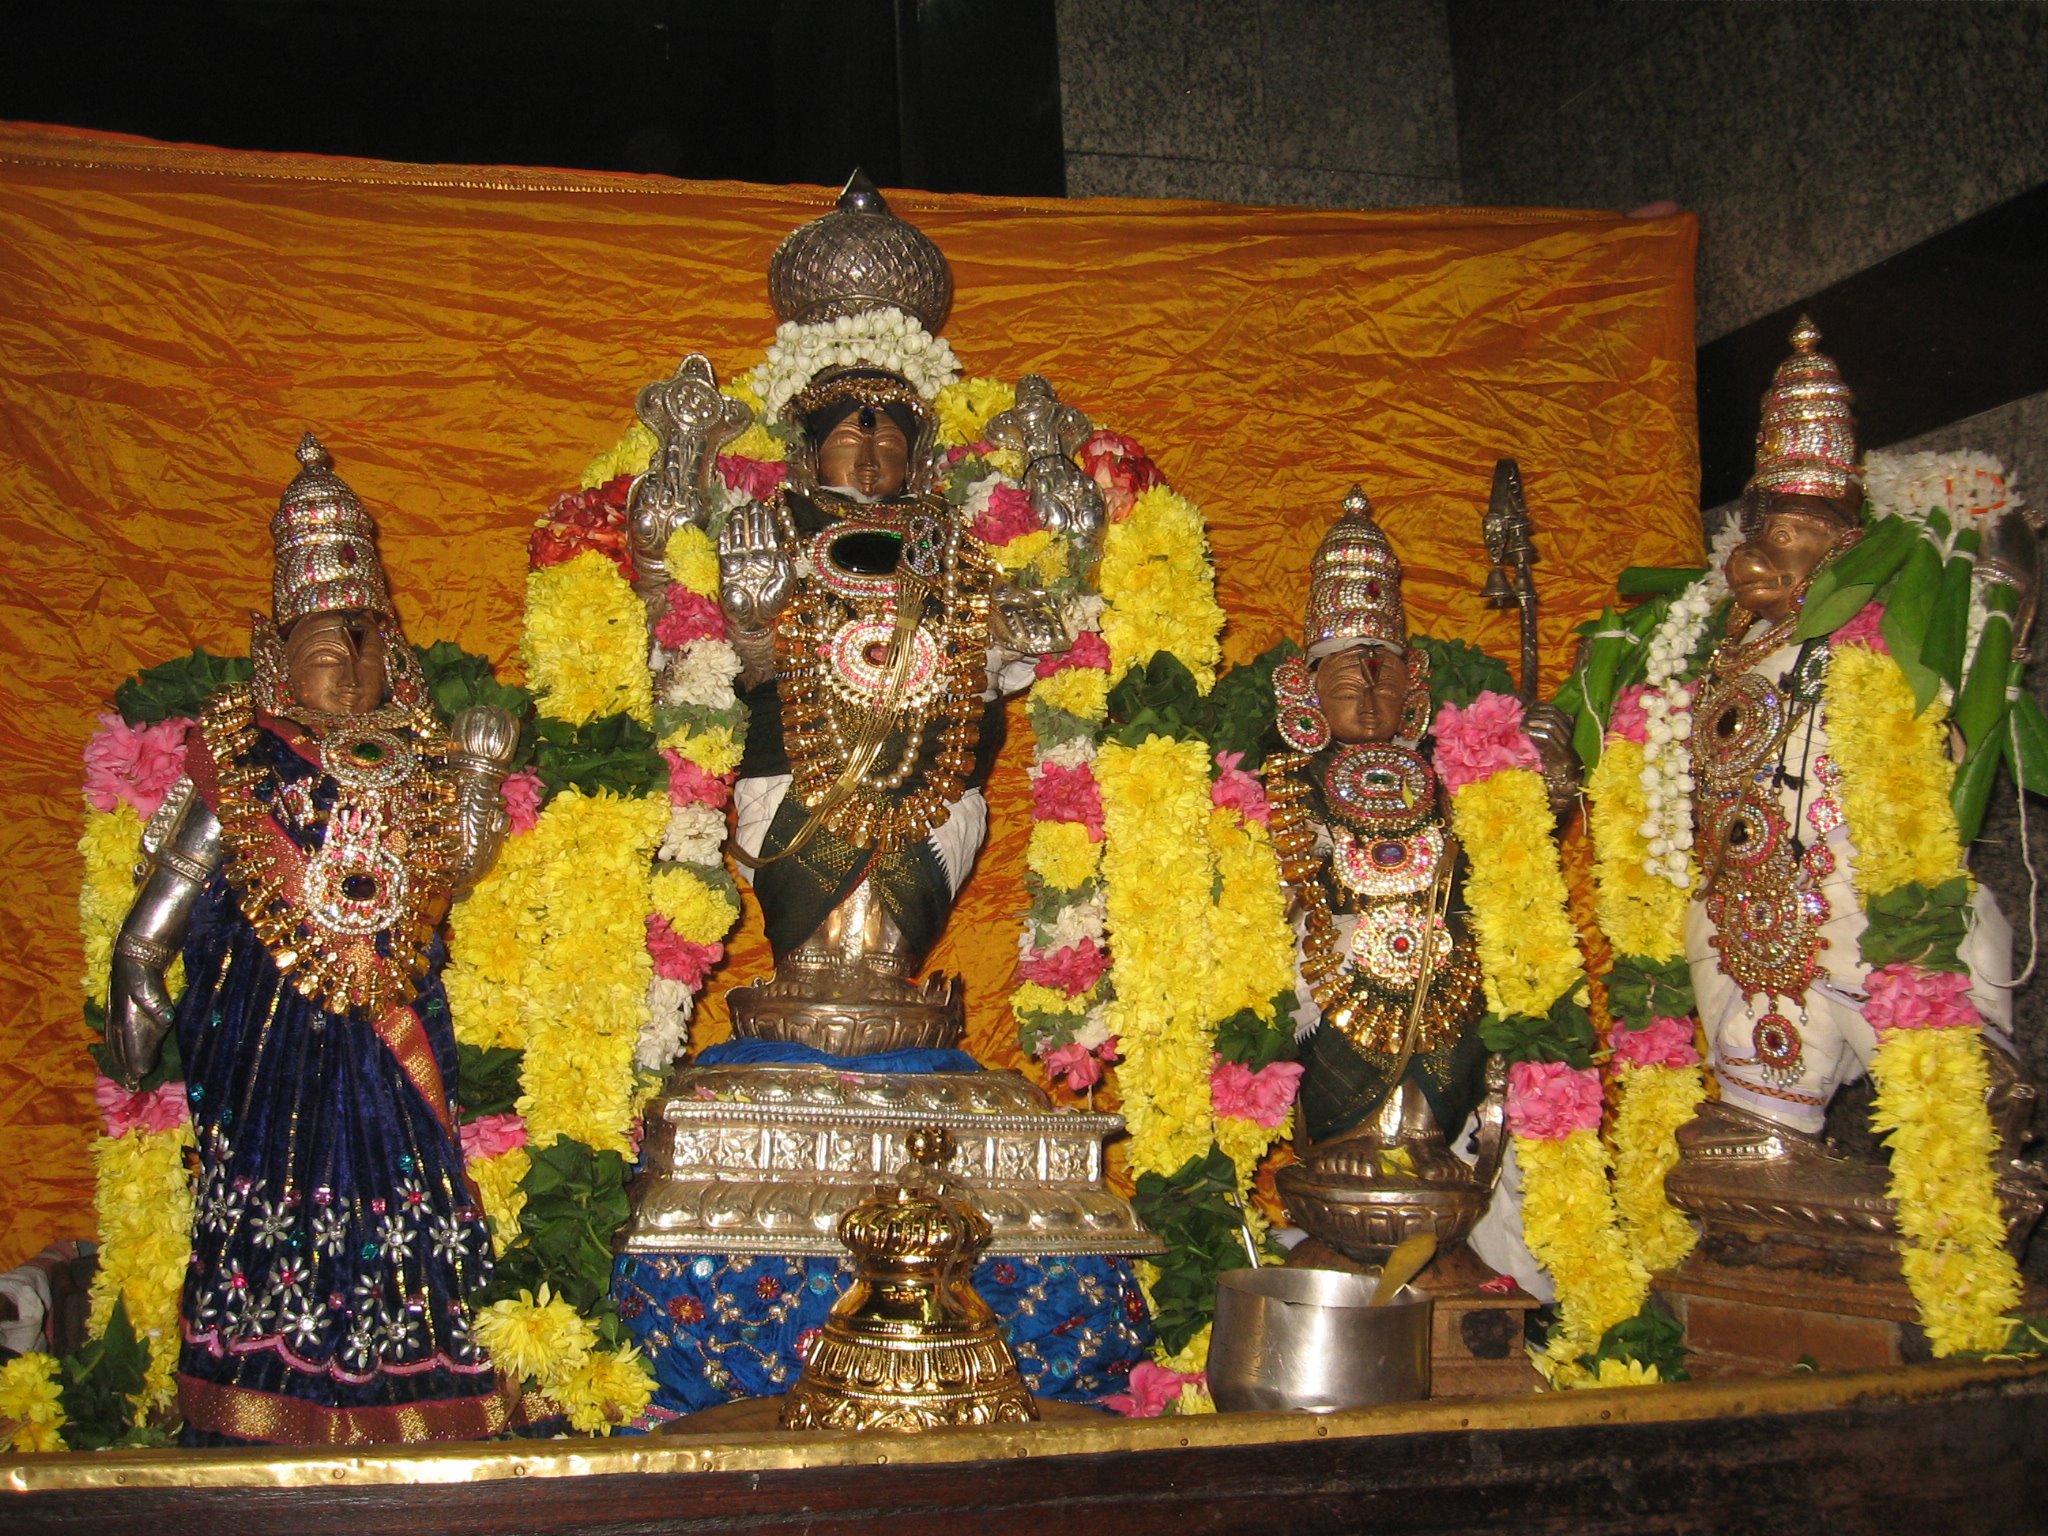 Vaikunda Ekadeshi at Sri kothanda ramar temple(West mambalam)